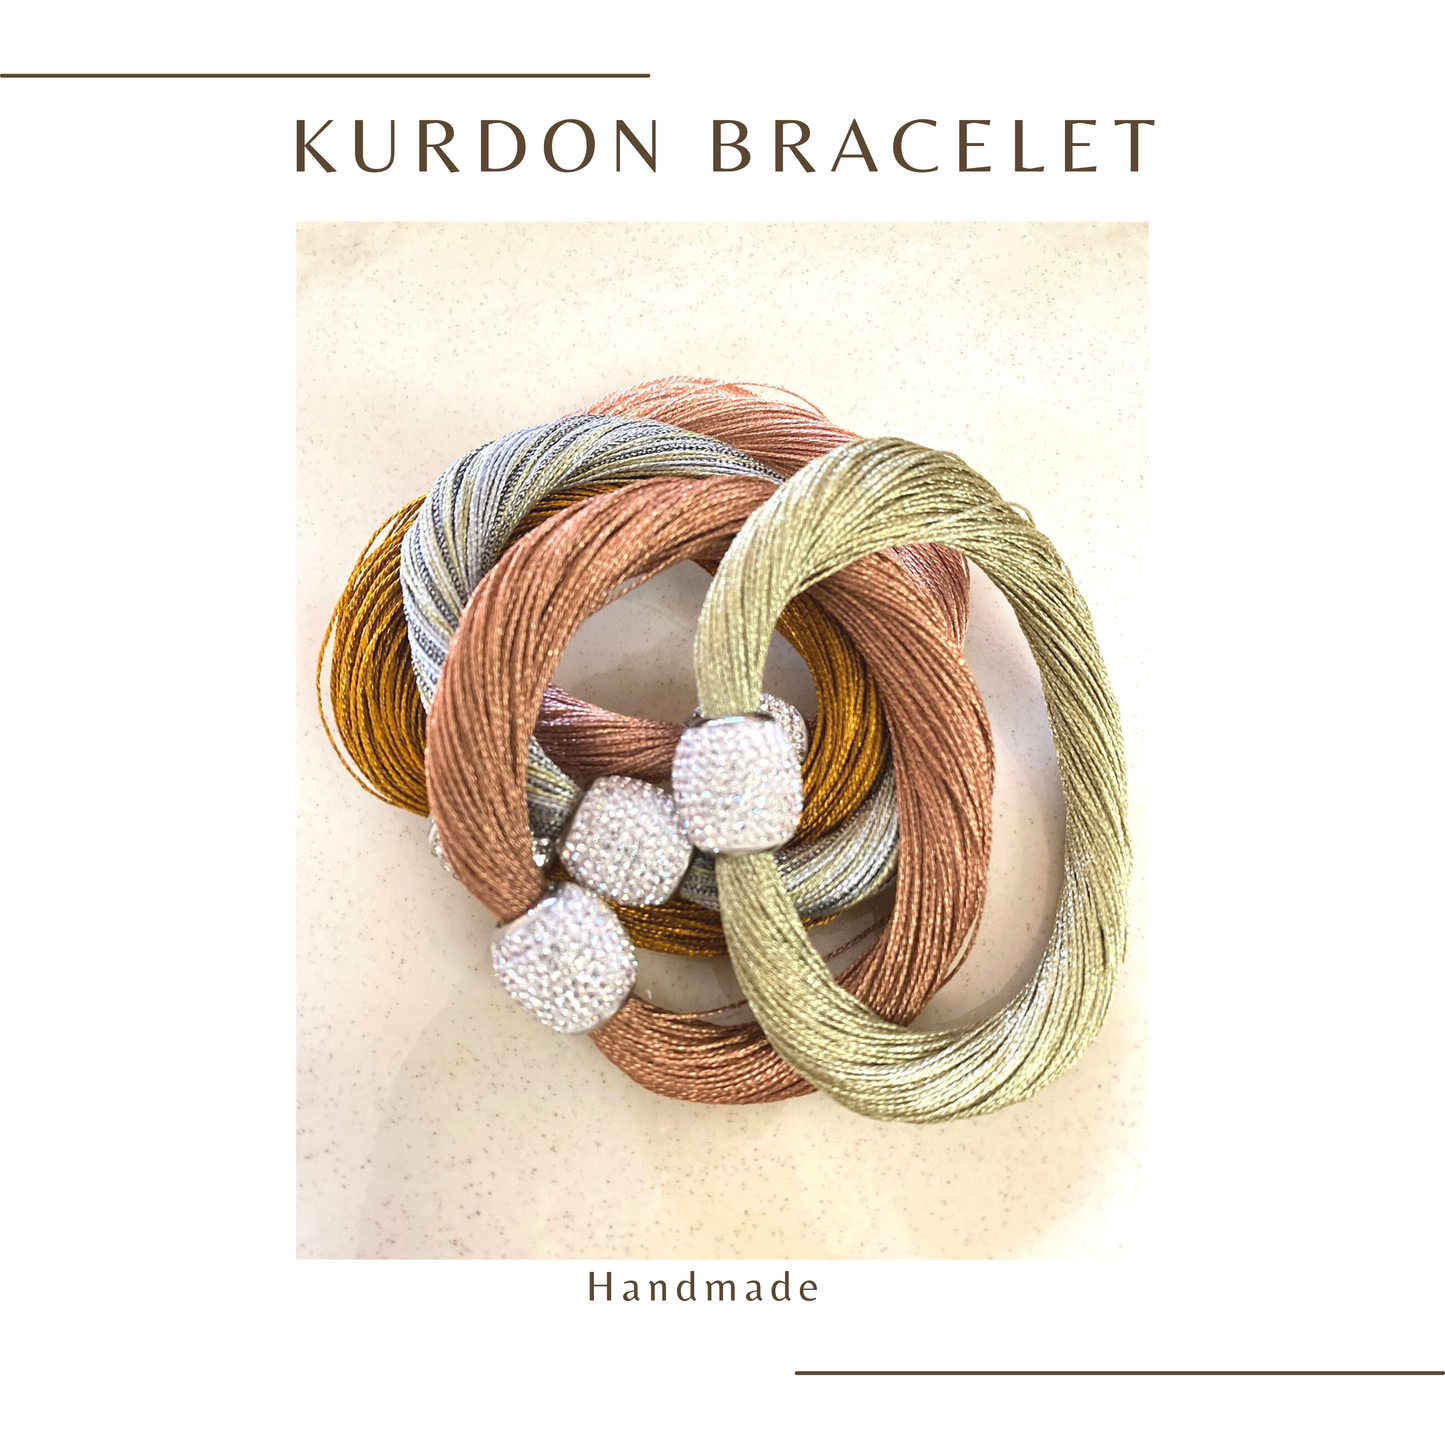 Kurdon Bracelet